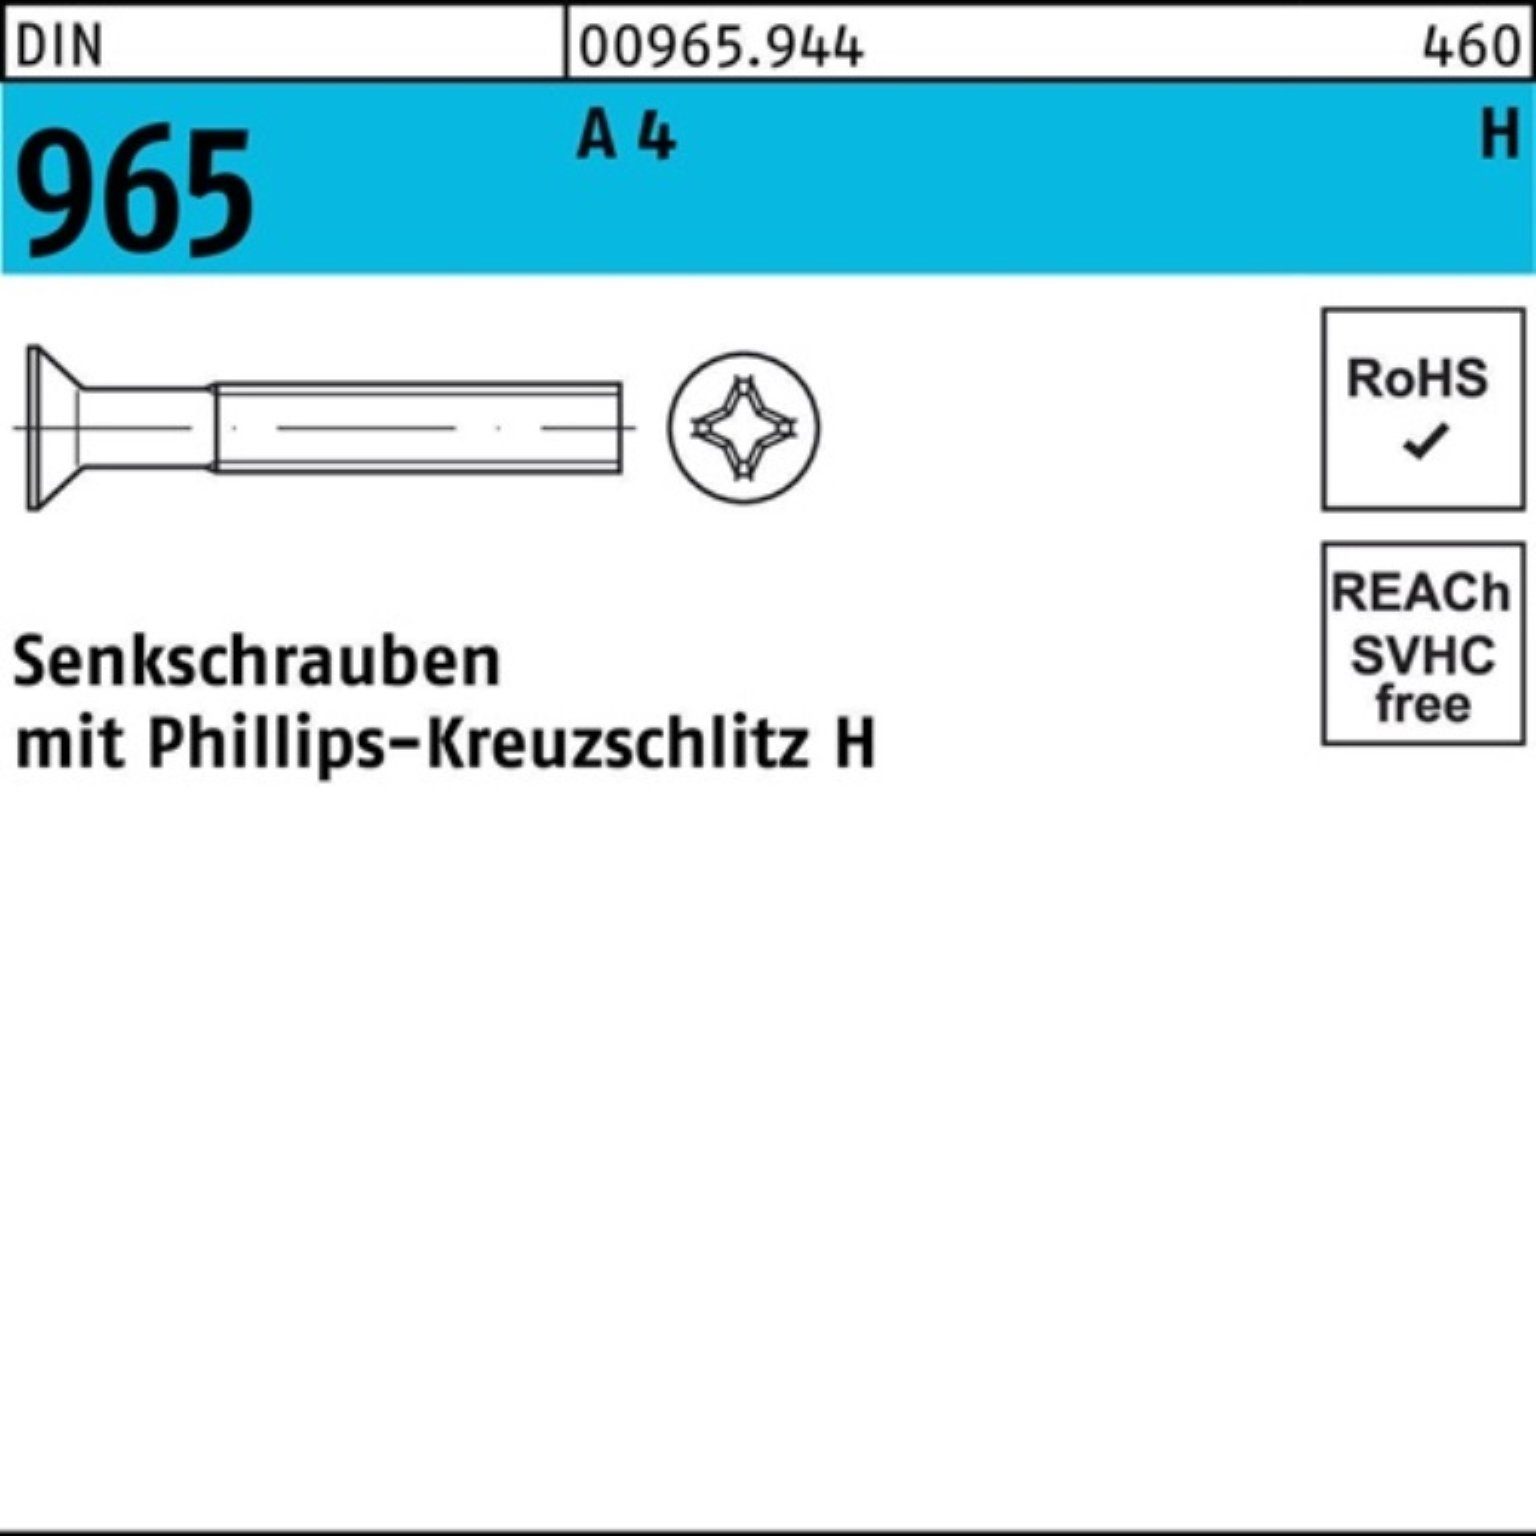 A Reyher 1000er Senkschraube M3x 1000 DIN Senkschraube Pack DIN A 4 PH 25-H 965 Stück 965